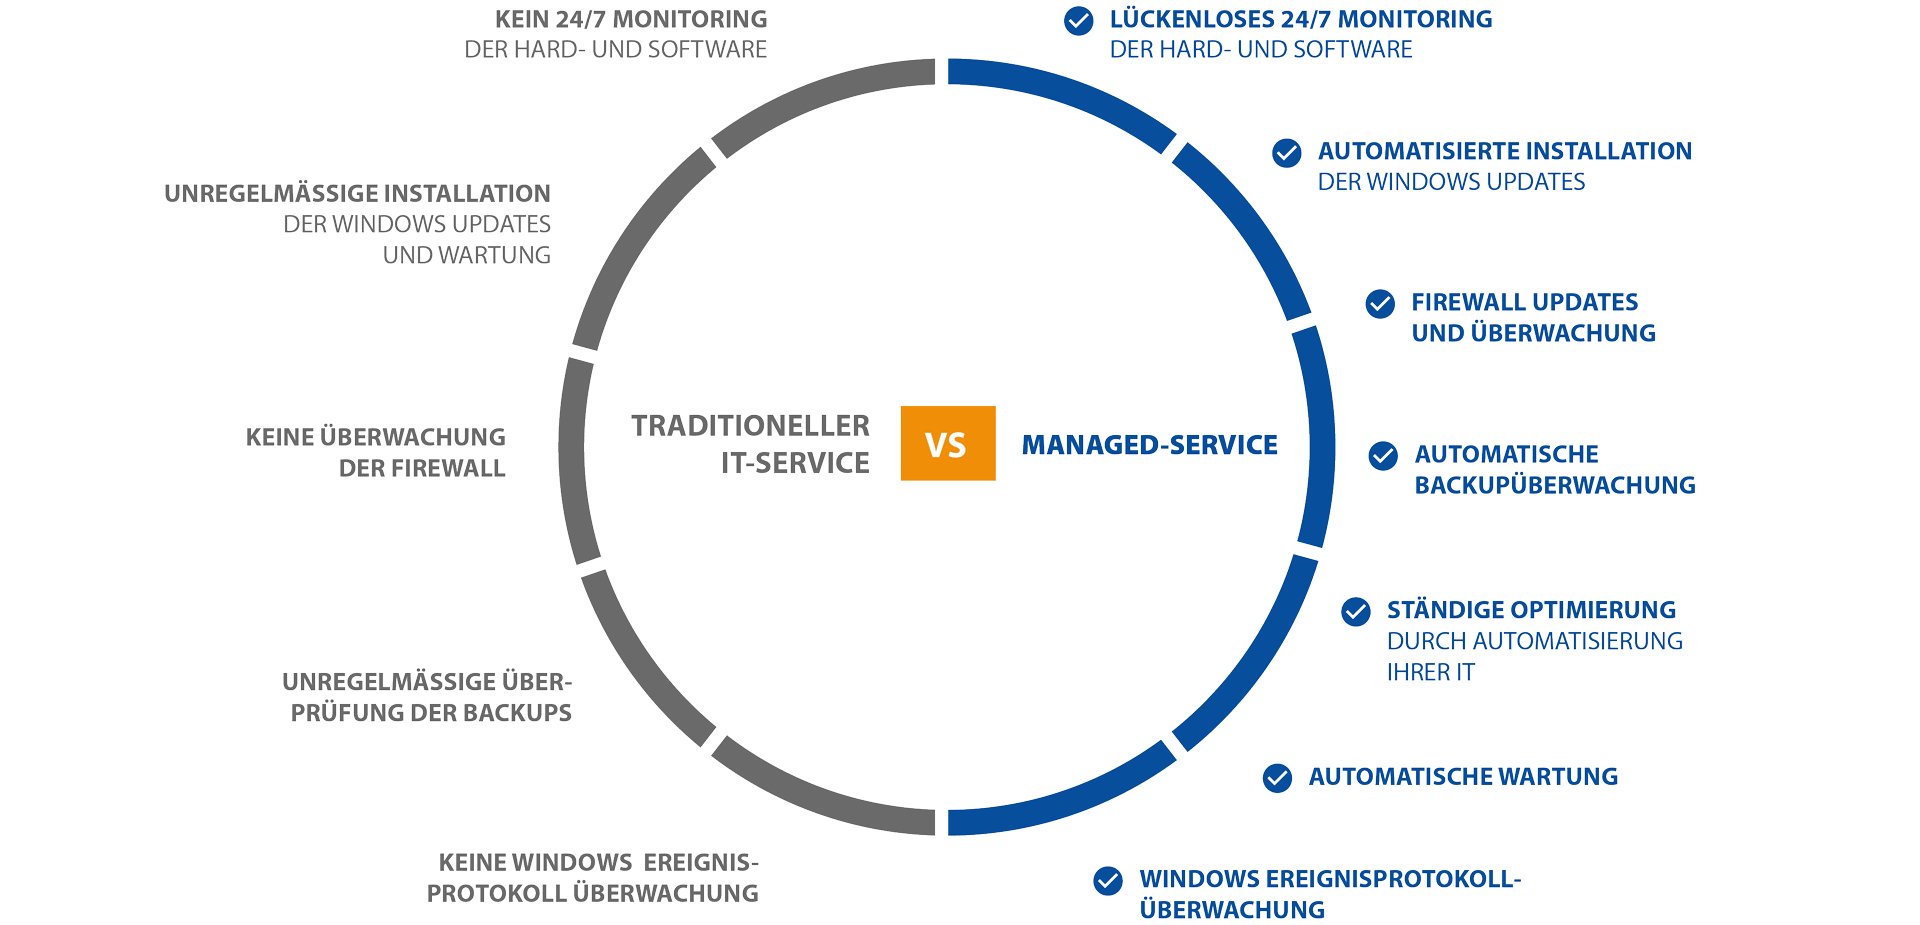 Managed Service vergleich Grafik